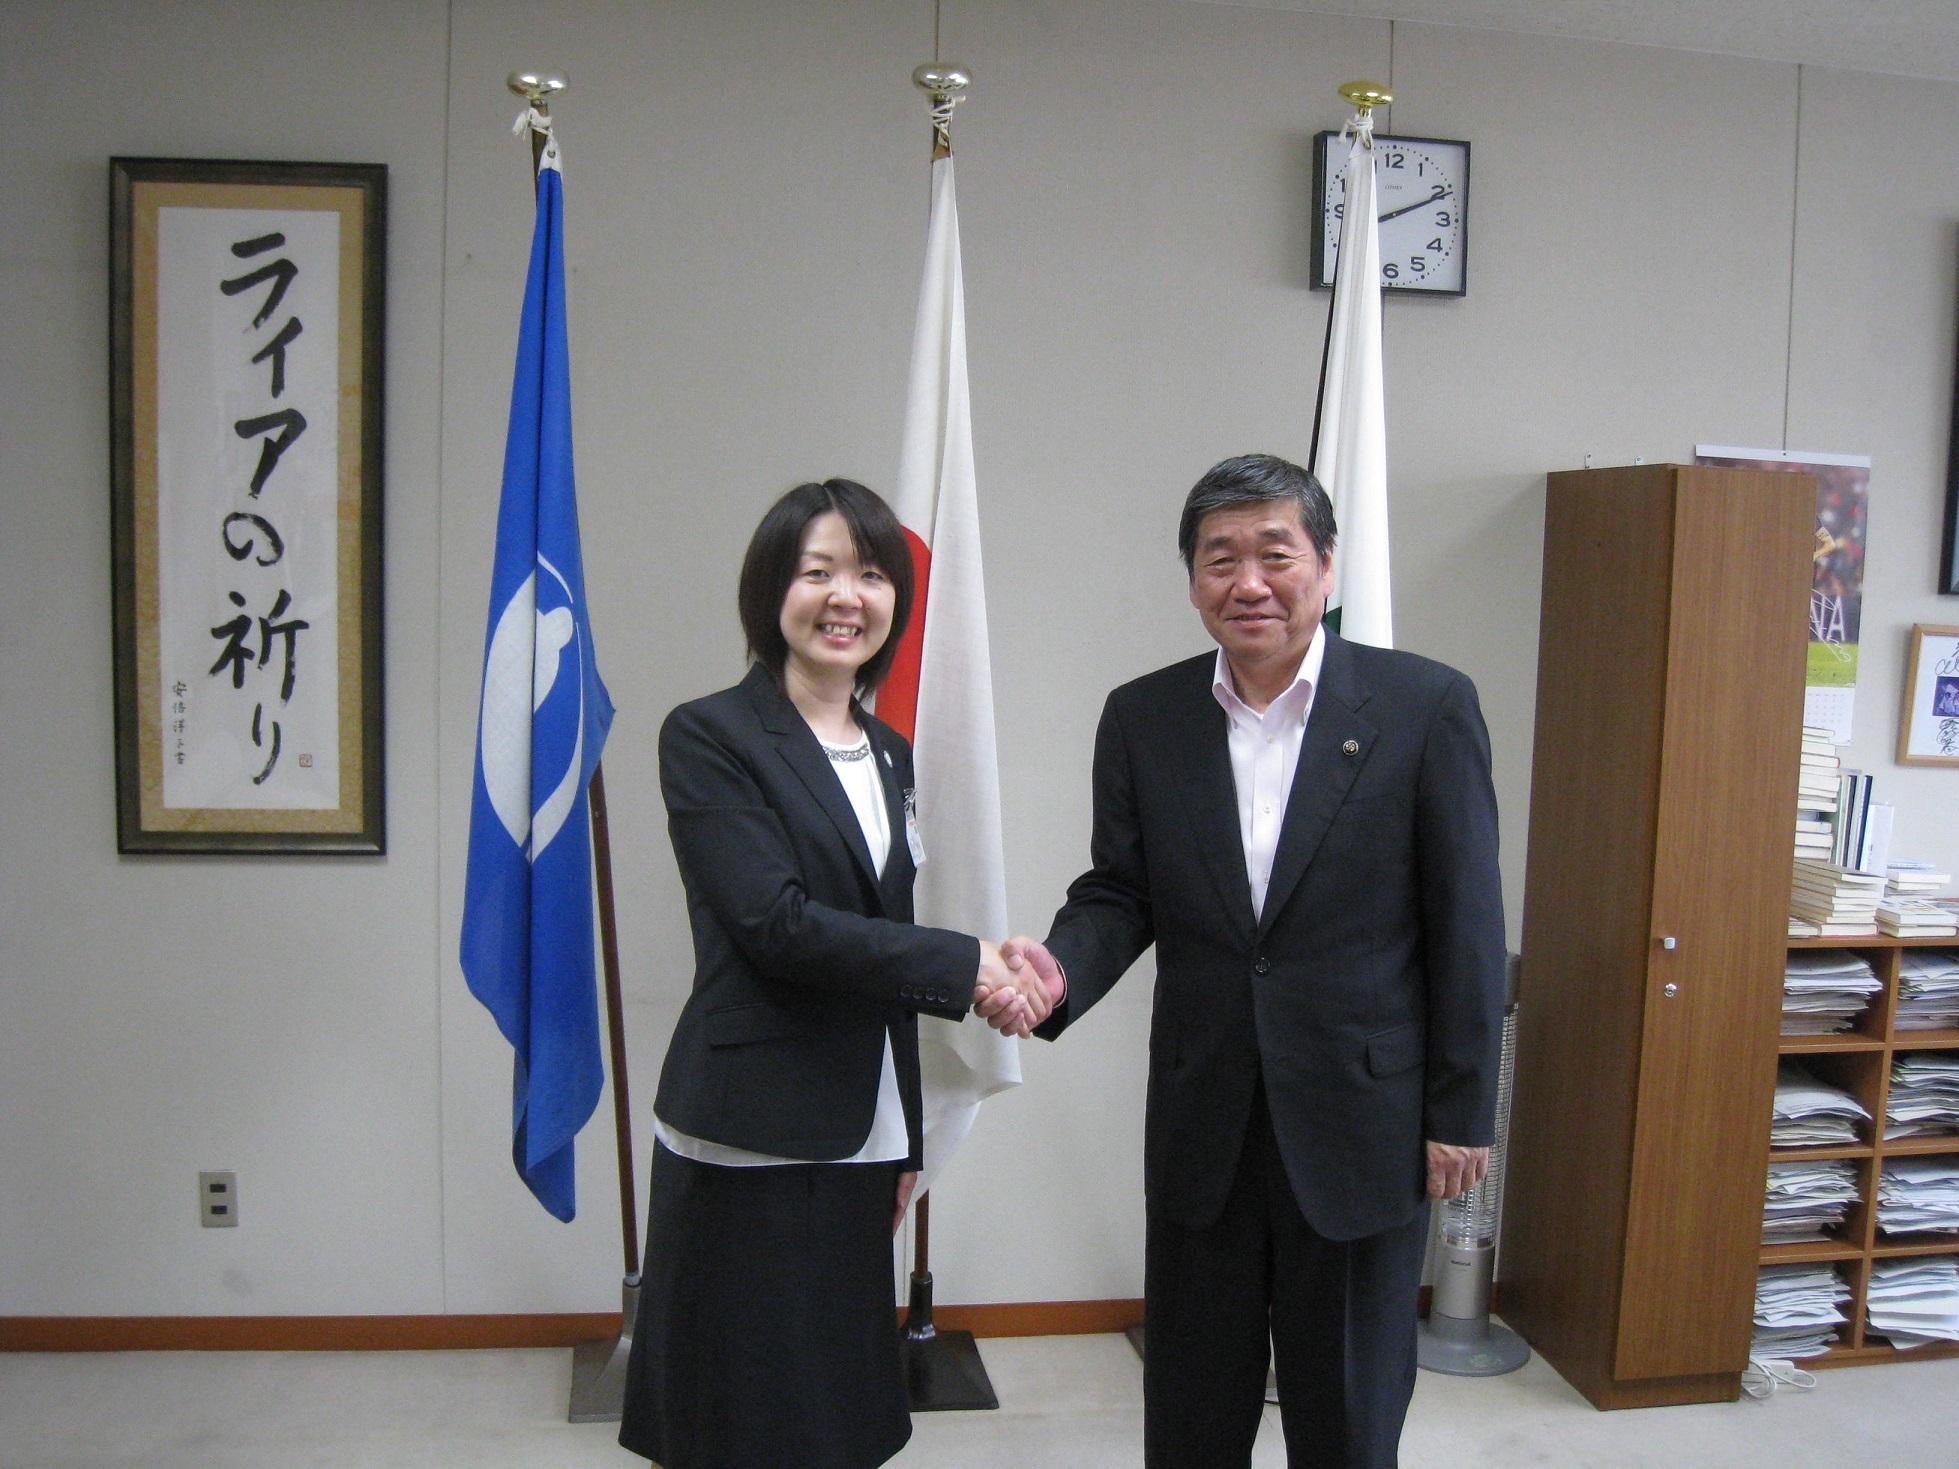 カネタミサさんが、小林市長に表敬訪問し、握手している写真